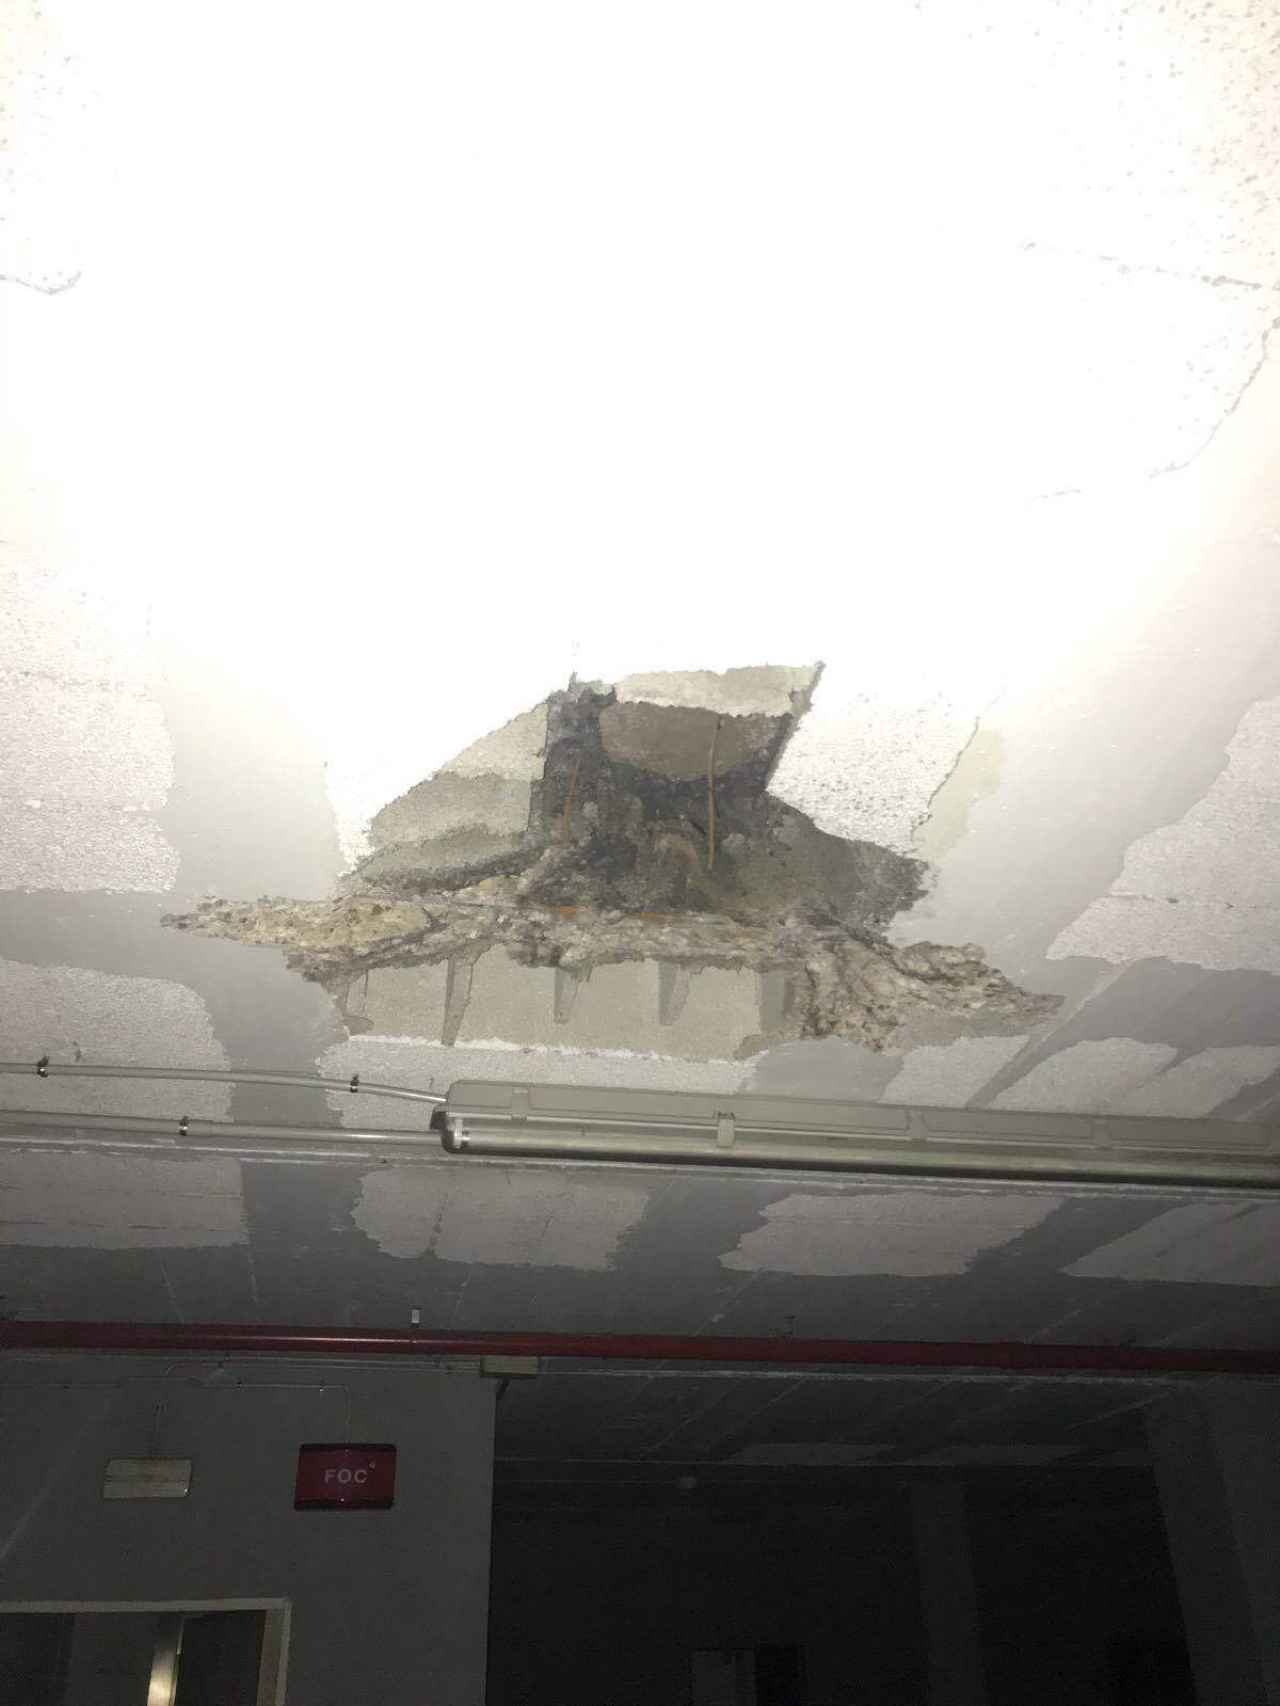 La explosión ha provocado boquetes en el techo del inmueble